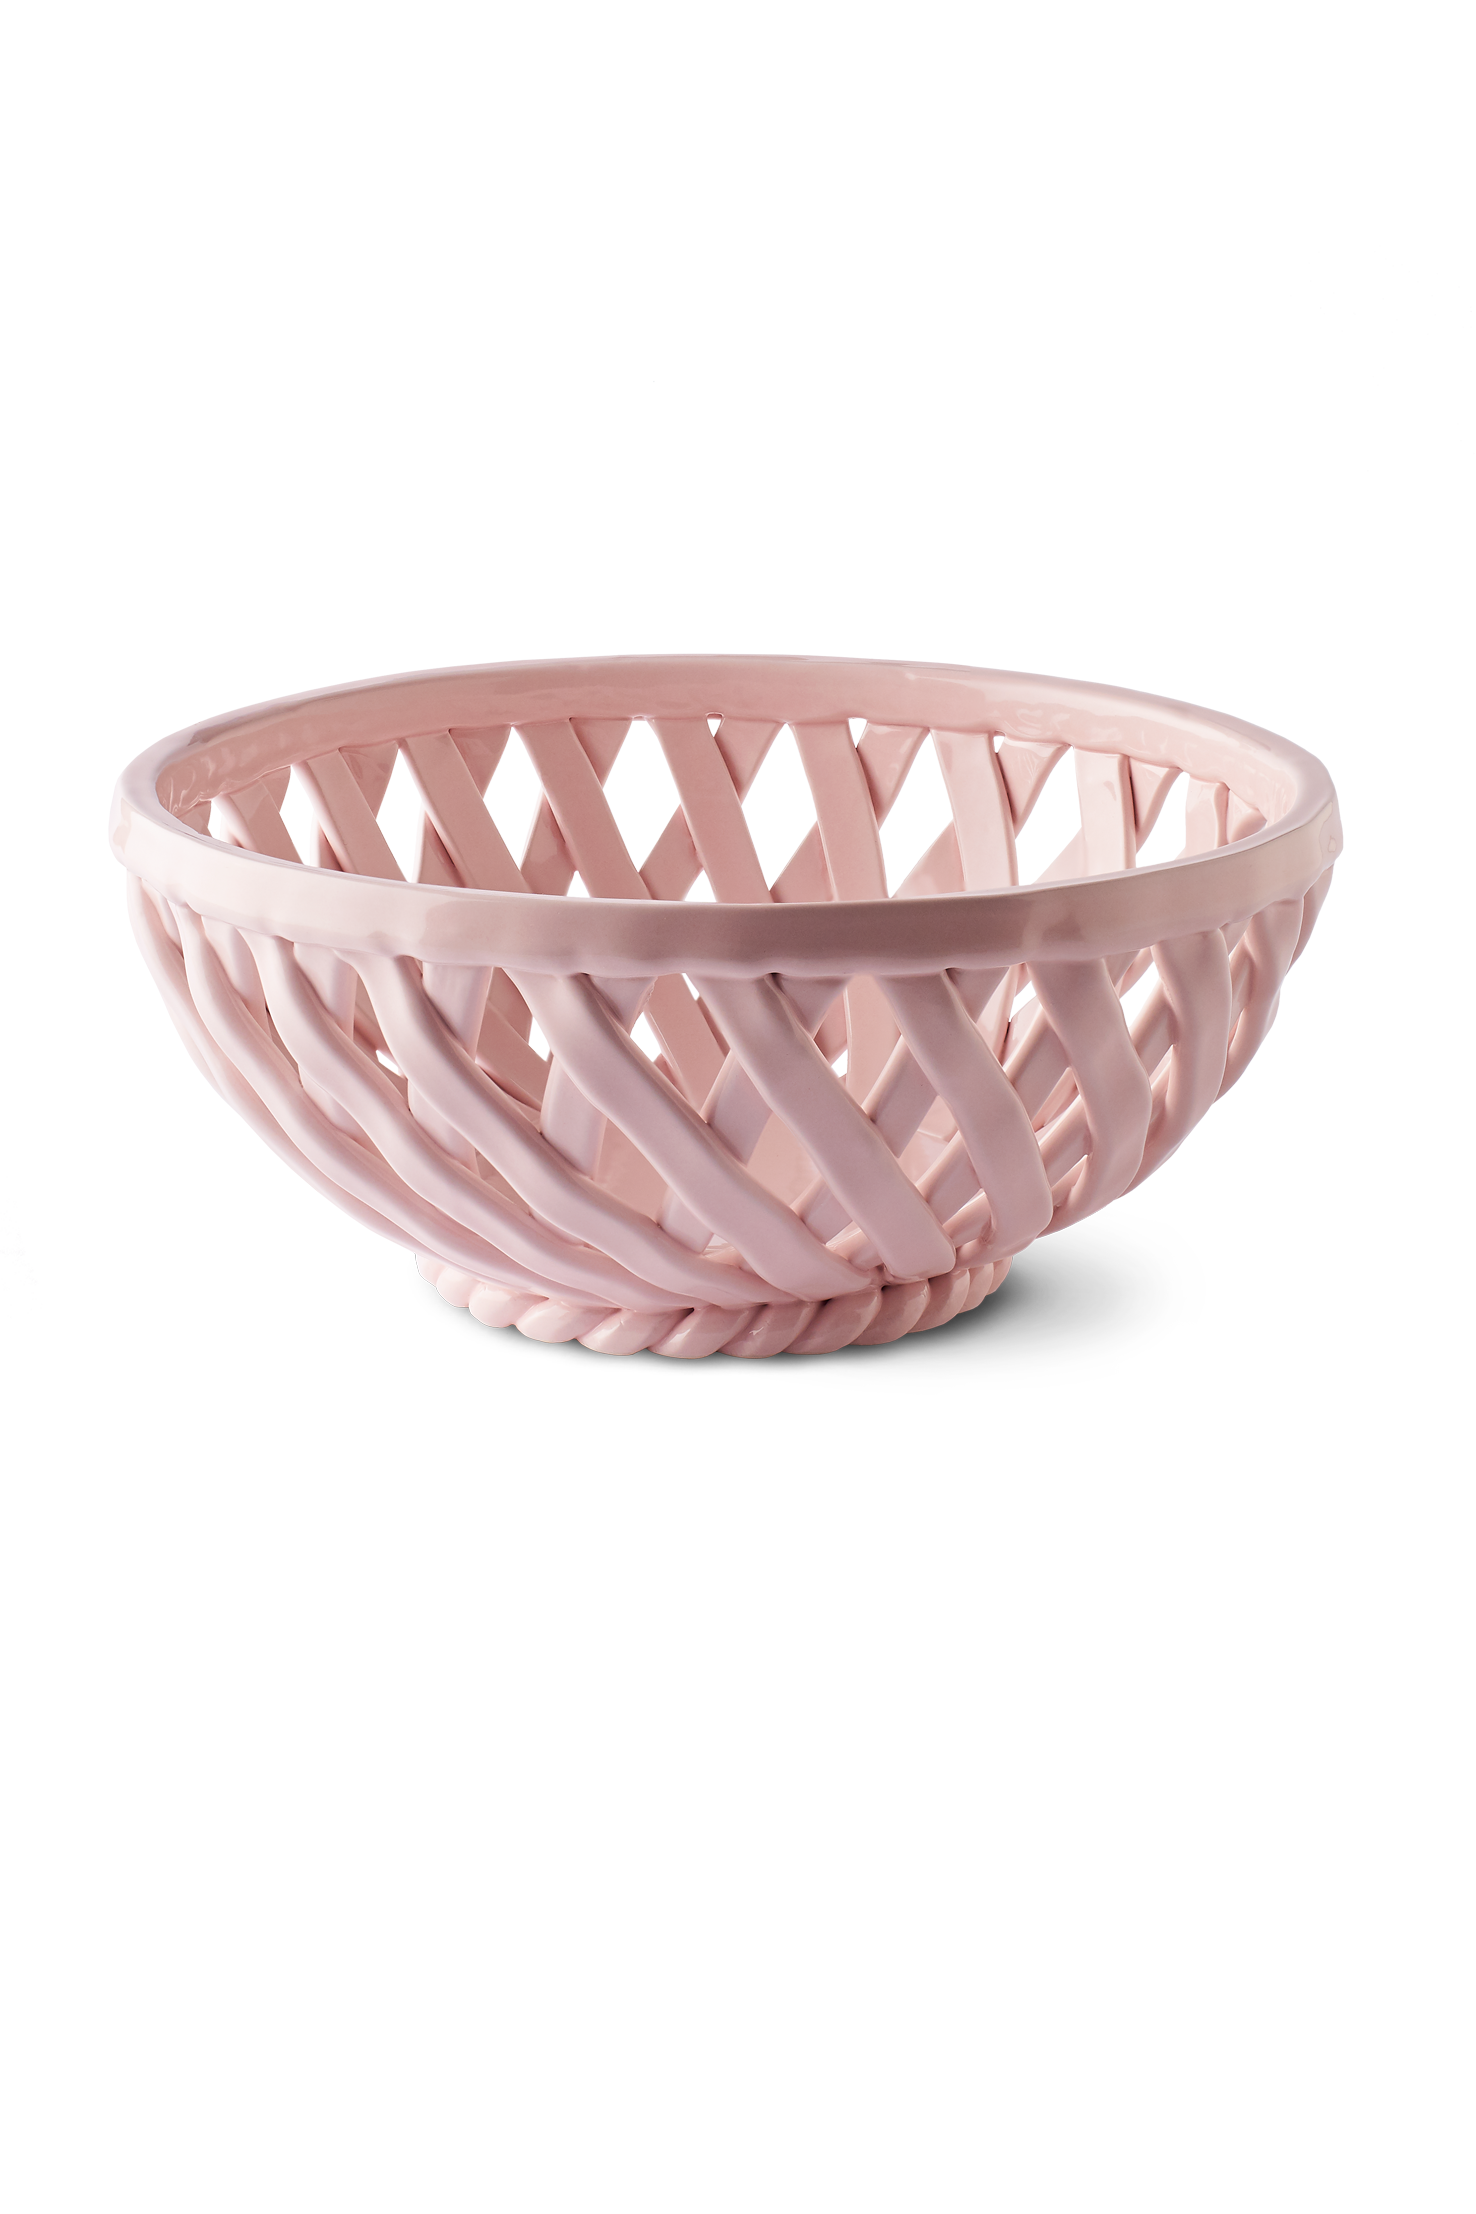 Sicilia Ceramic Basket - Large